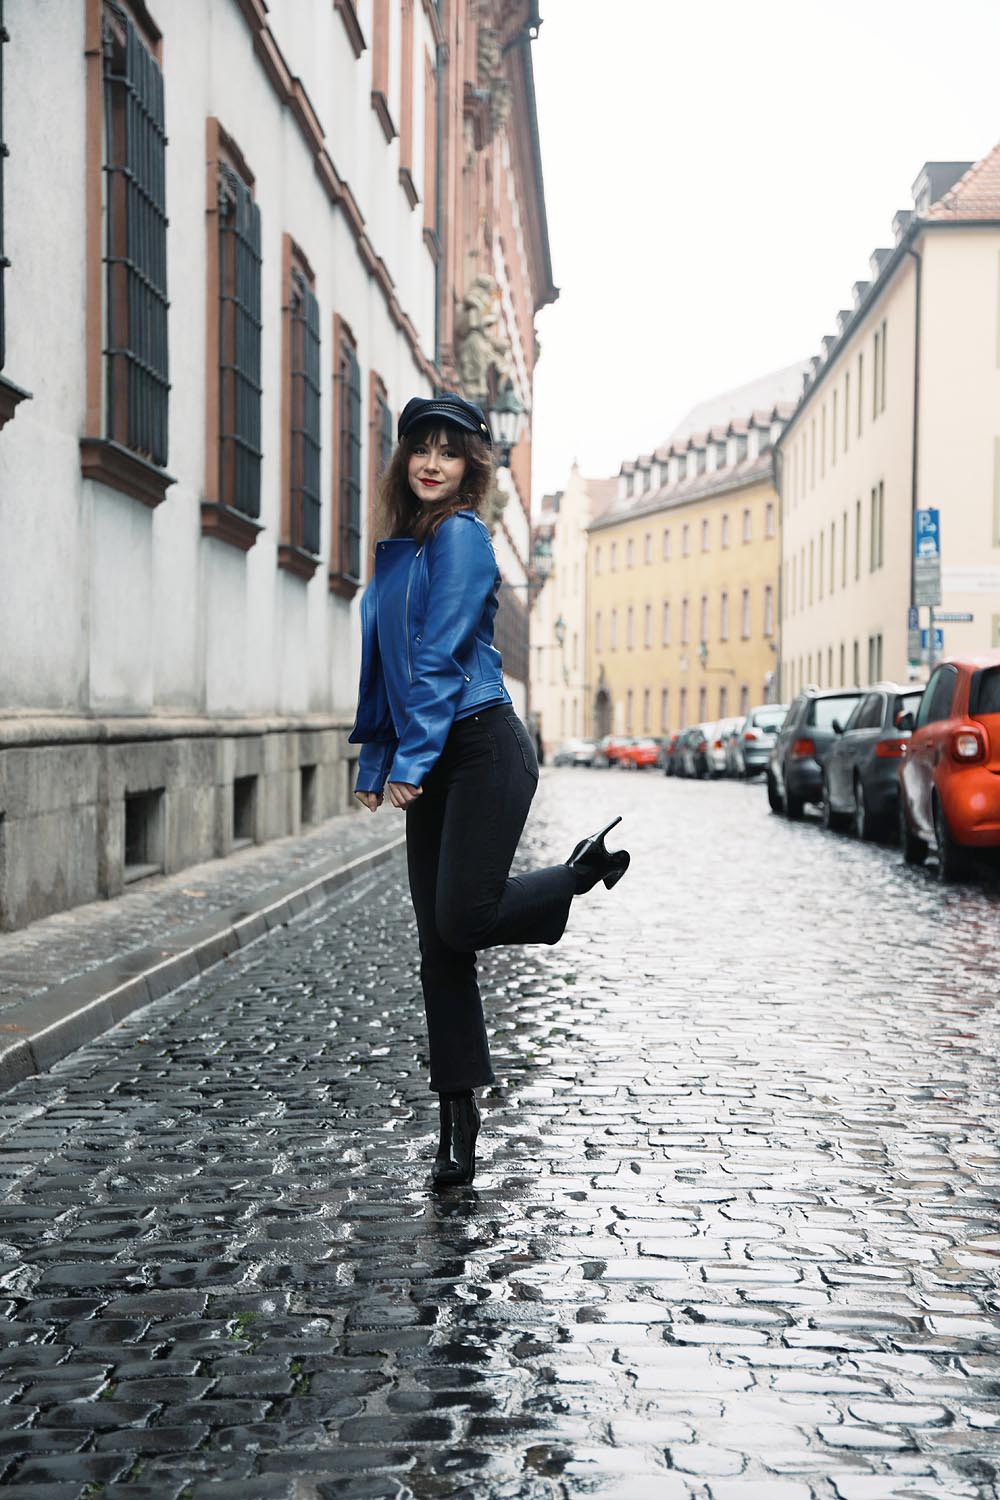 Parisian-Inspired Outfit| Fashion Blog Deutschland